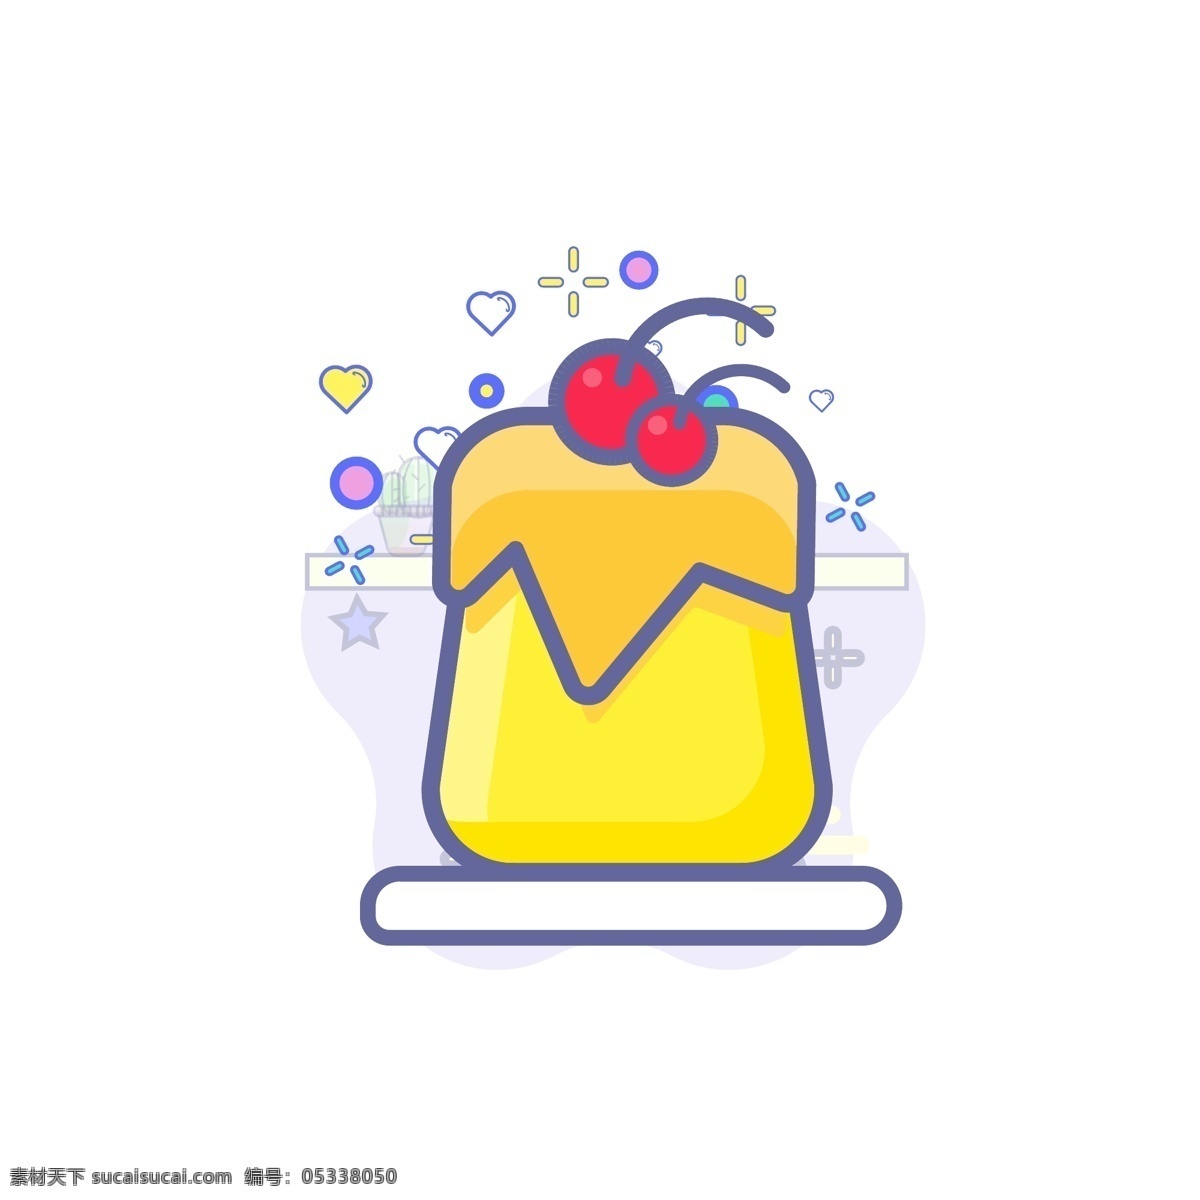 餐饮 食物 甜品 蛋糕 美食 图标 几何 元素 果冻 装饰 黄色 红色